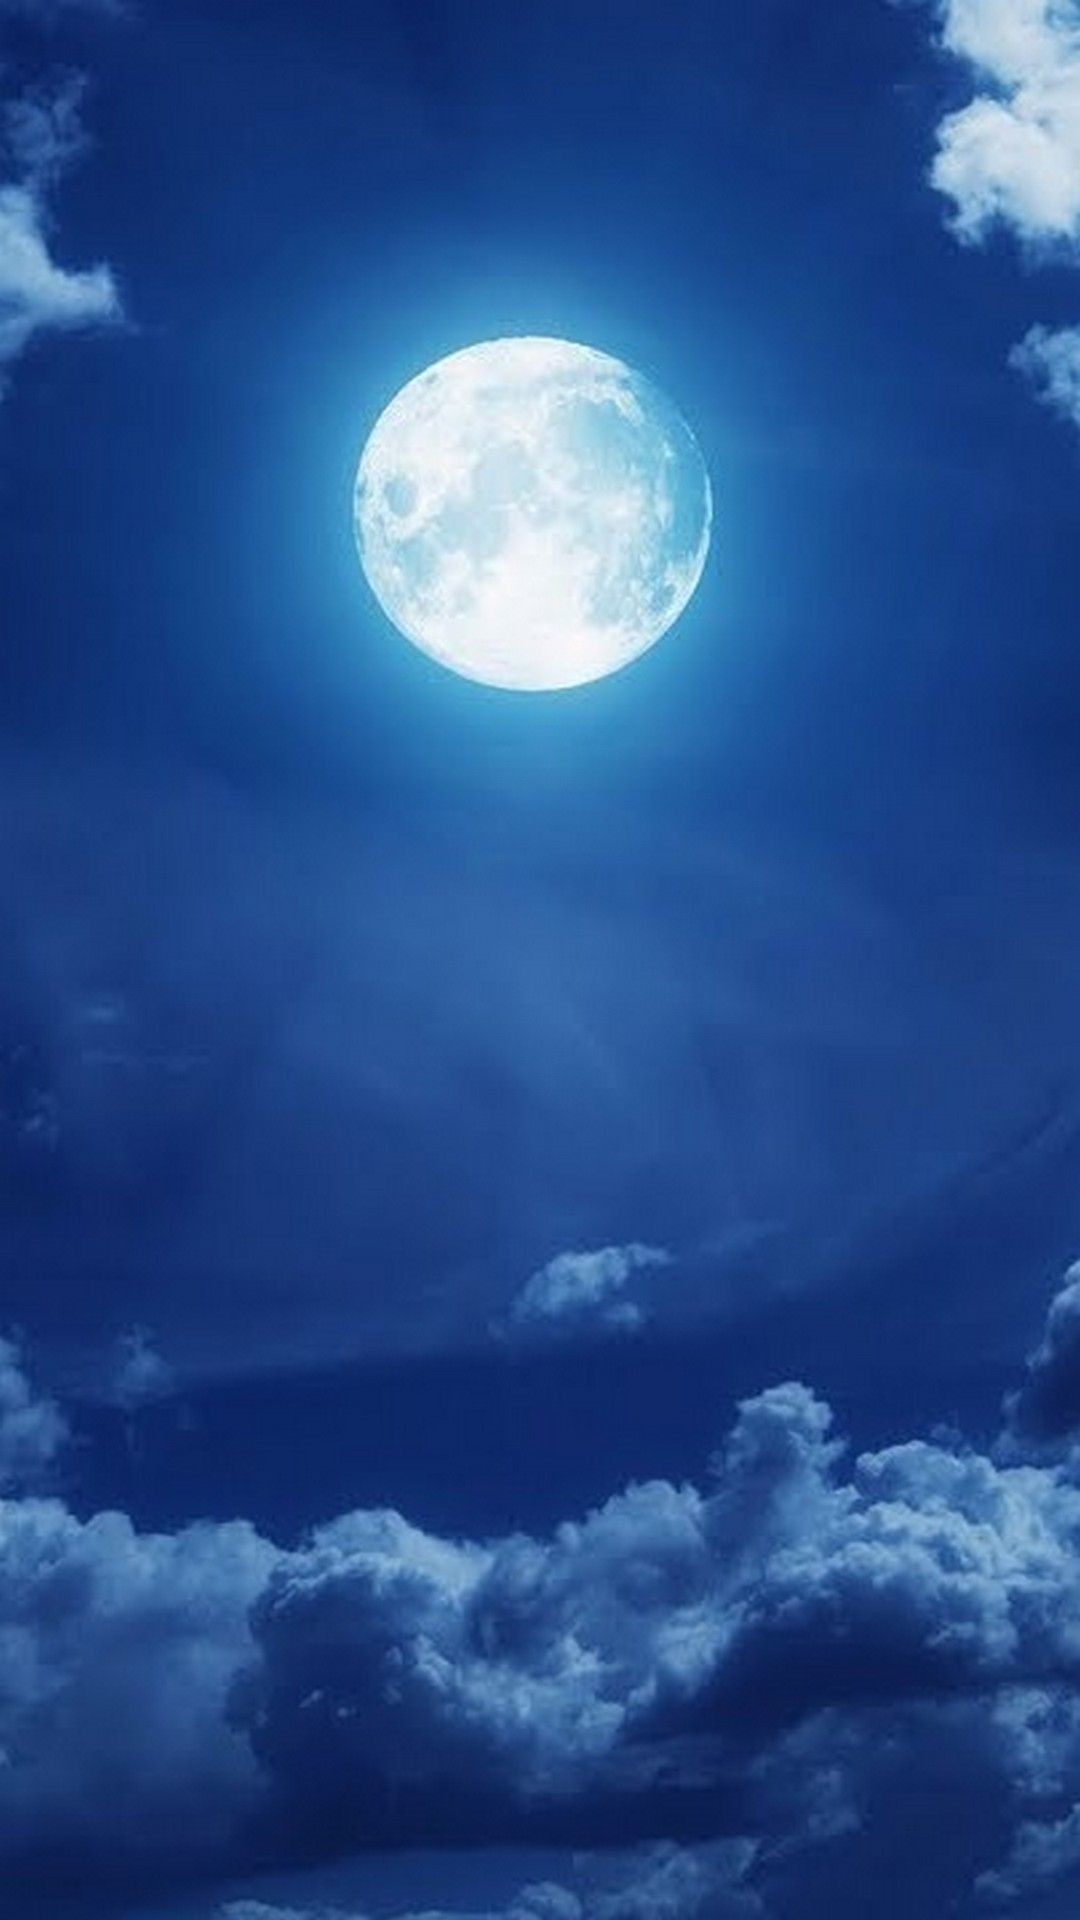 1080x1920 Super Blue Blood Moon Wallpaper iPhone - Best iPhone Wallpaper